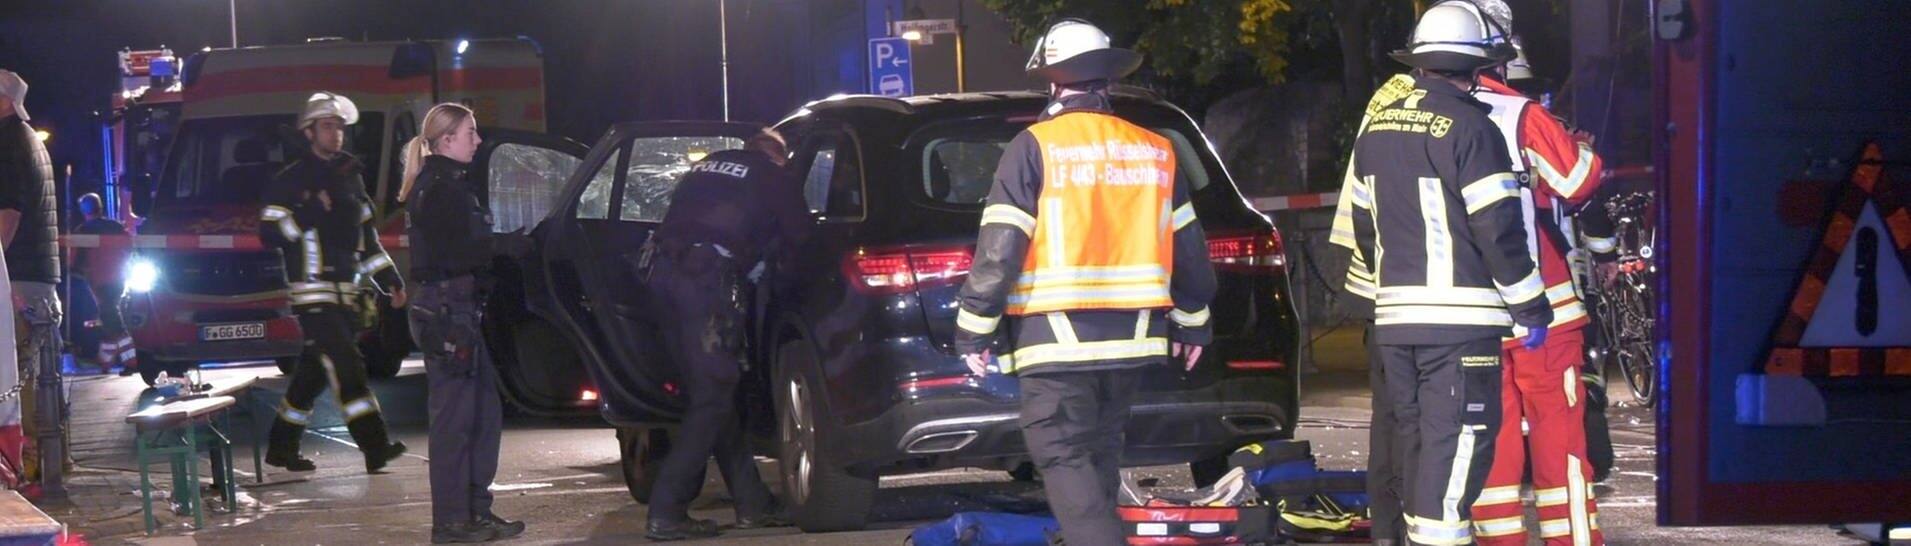 Einsatzkräfte der Polizei und Feuerwehr sowie Rettungskräfte stehen im Rüsselsheimer Ortsteil Bauschheim an der Unfallstelle, nachdem ein Mann mit dem Auto in eine Gruppe gefahren ist und mehrere Menschen verletzt werden wurden.  (Foto: dpa Bildfunk, picture alliance/dpa/Keutz-TVNews | Keutz-TVNews)